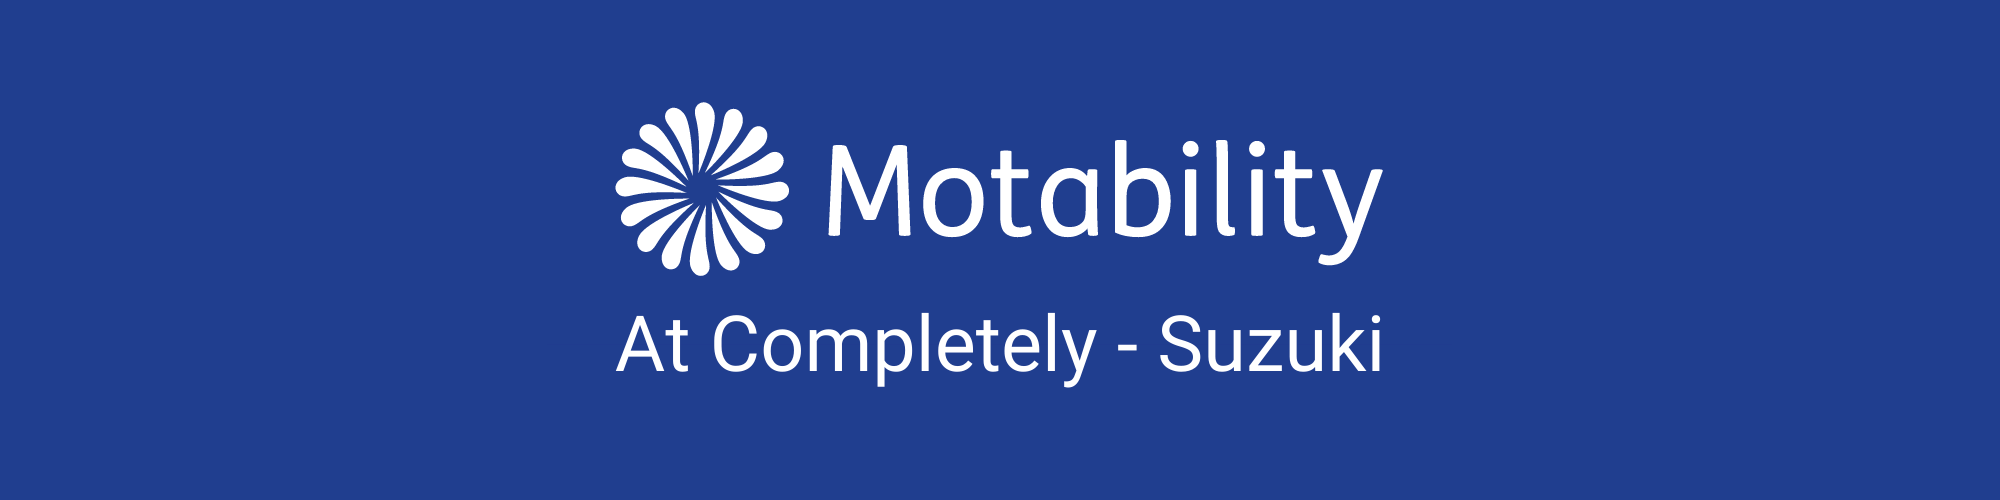 Motability at Completely-Suzuki